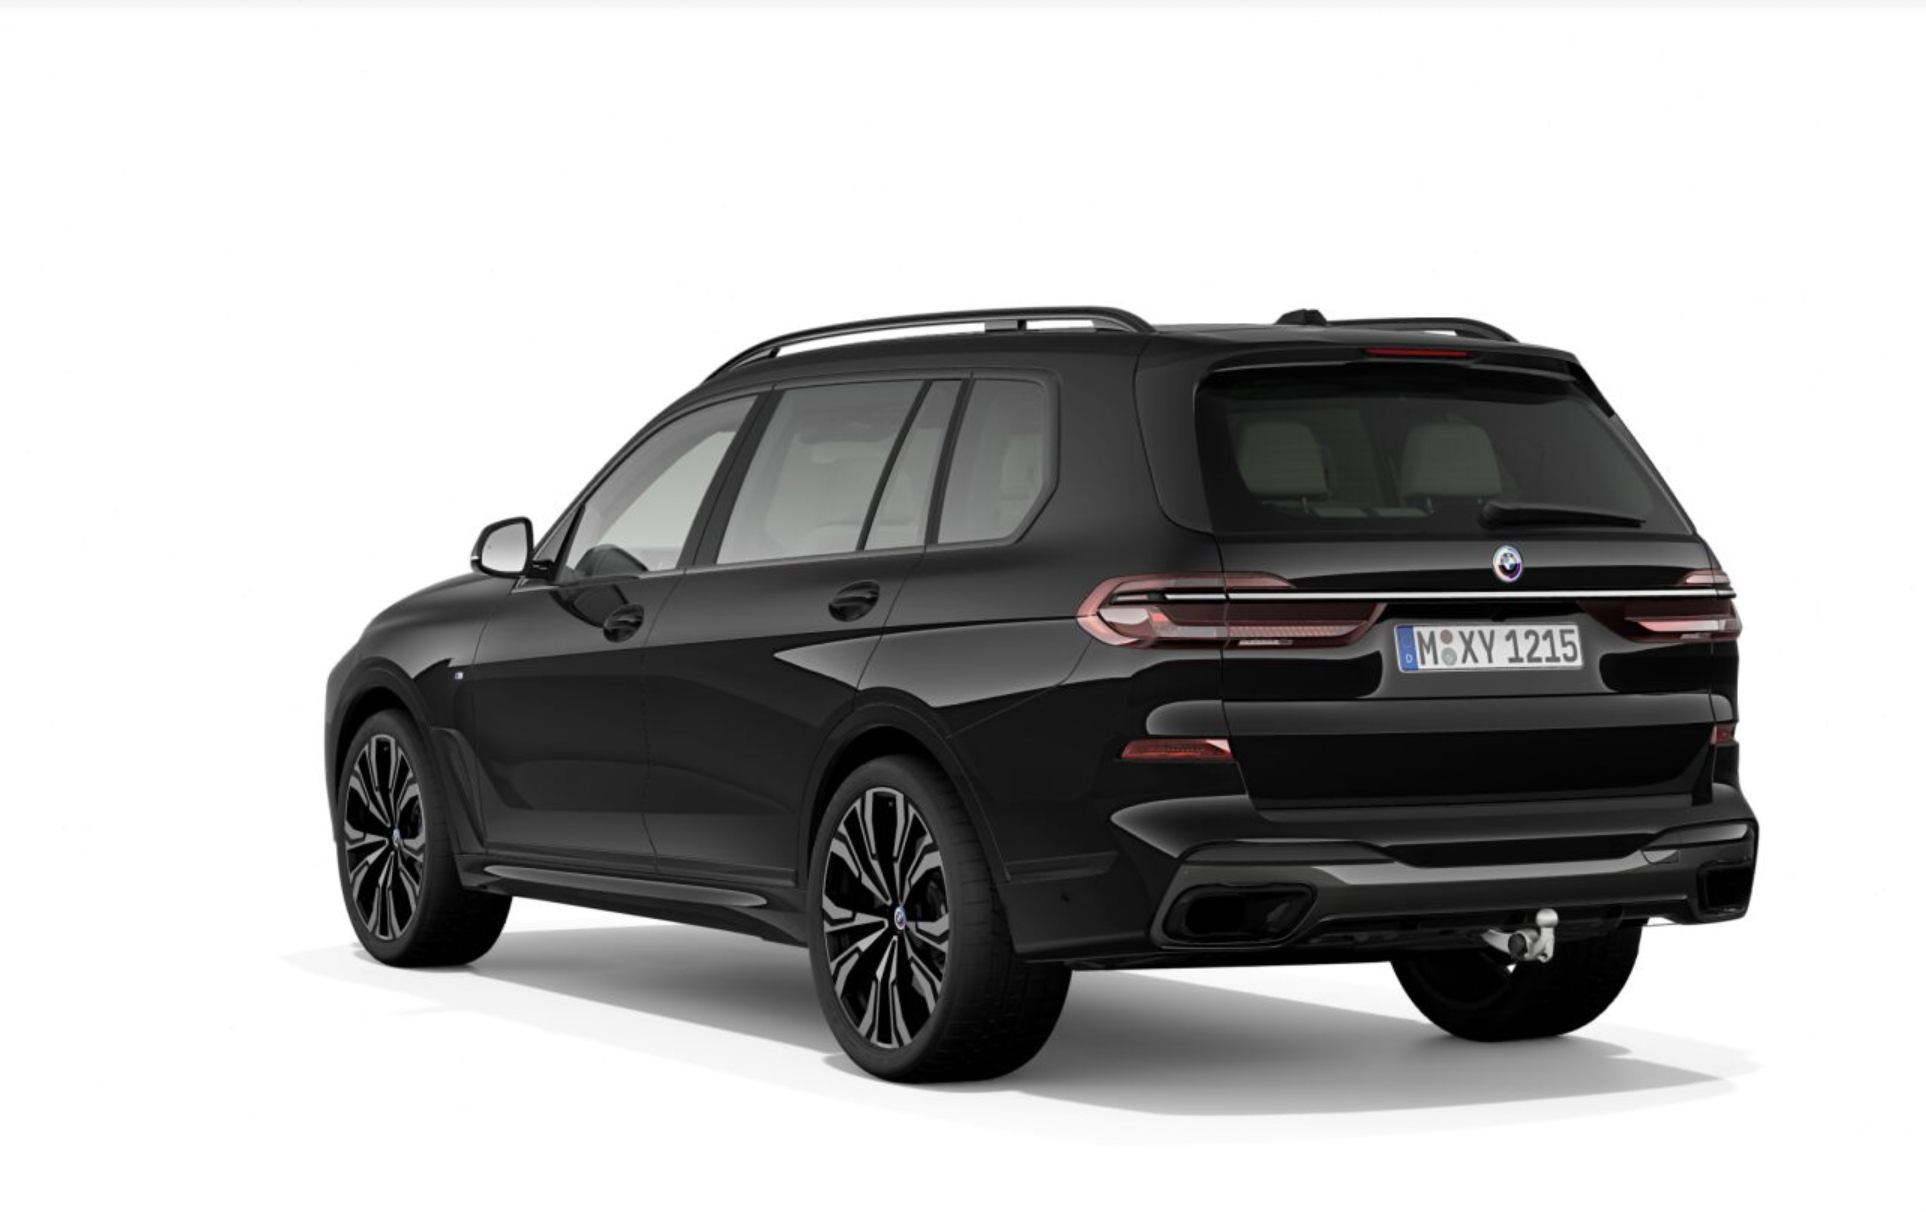 BMW X7 40d xDrive Mpaket | nový facelift | novinka 2022 | luxusní sportovní velké SUV | první objednávky online | první auta ve výrobě | auto eshop | AUTOiBUY.com